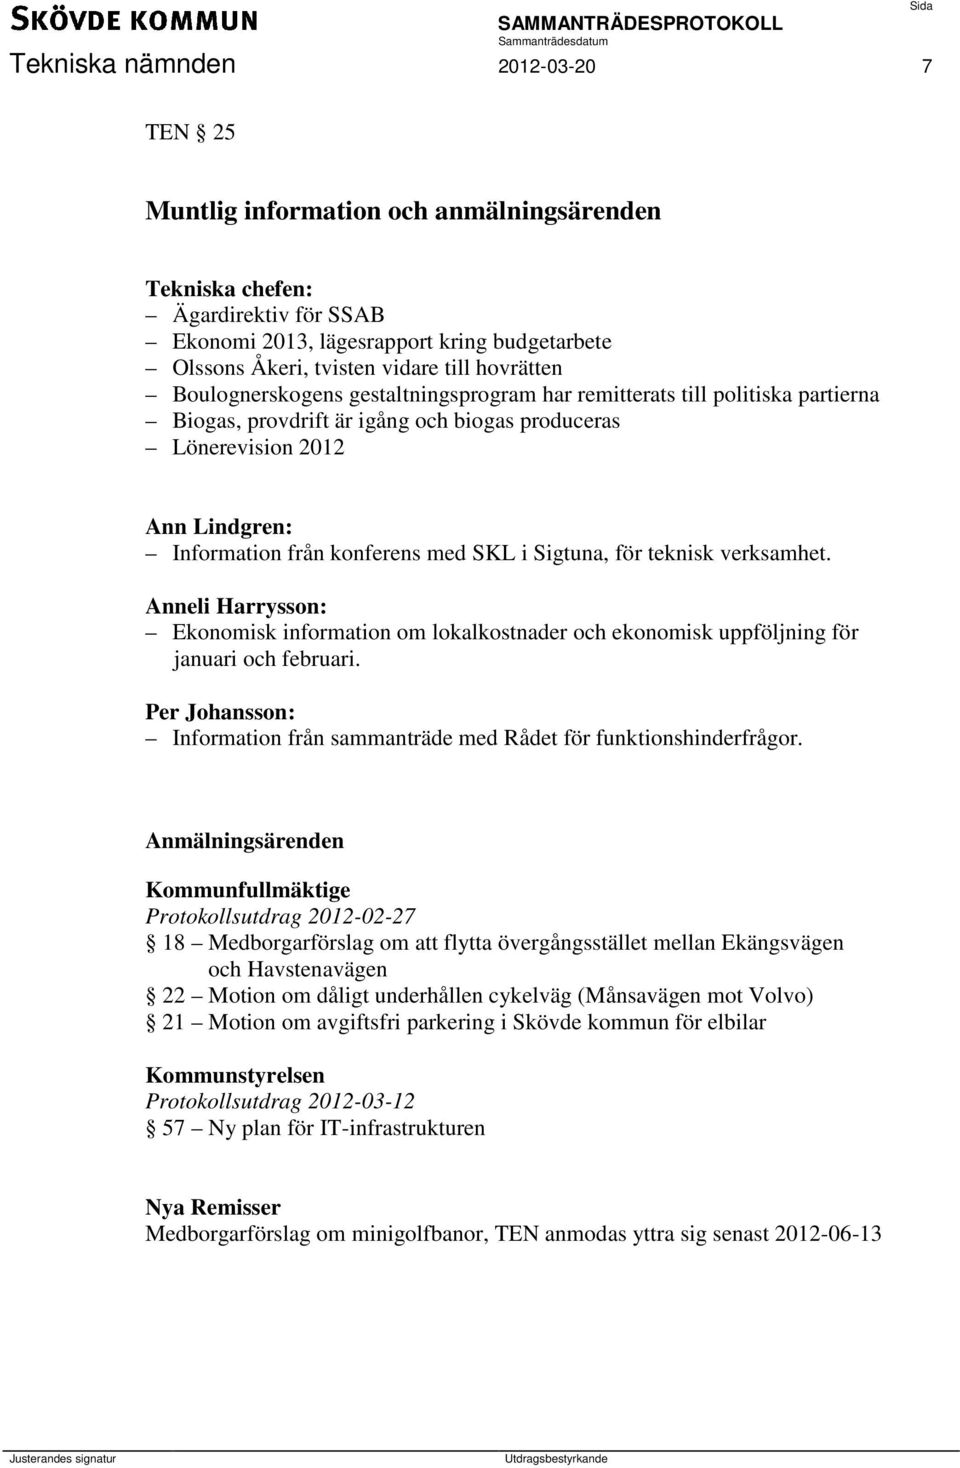 SKL i Sigtuna, för teknisk verksamhet. Anneli Harrysson: Ekonomisk information om lokalkostnader och ekonomisk uppföljning för januari och februari.